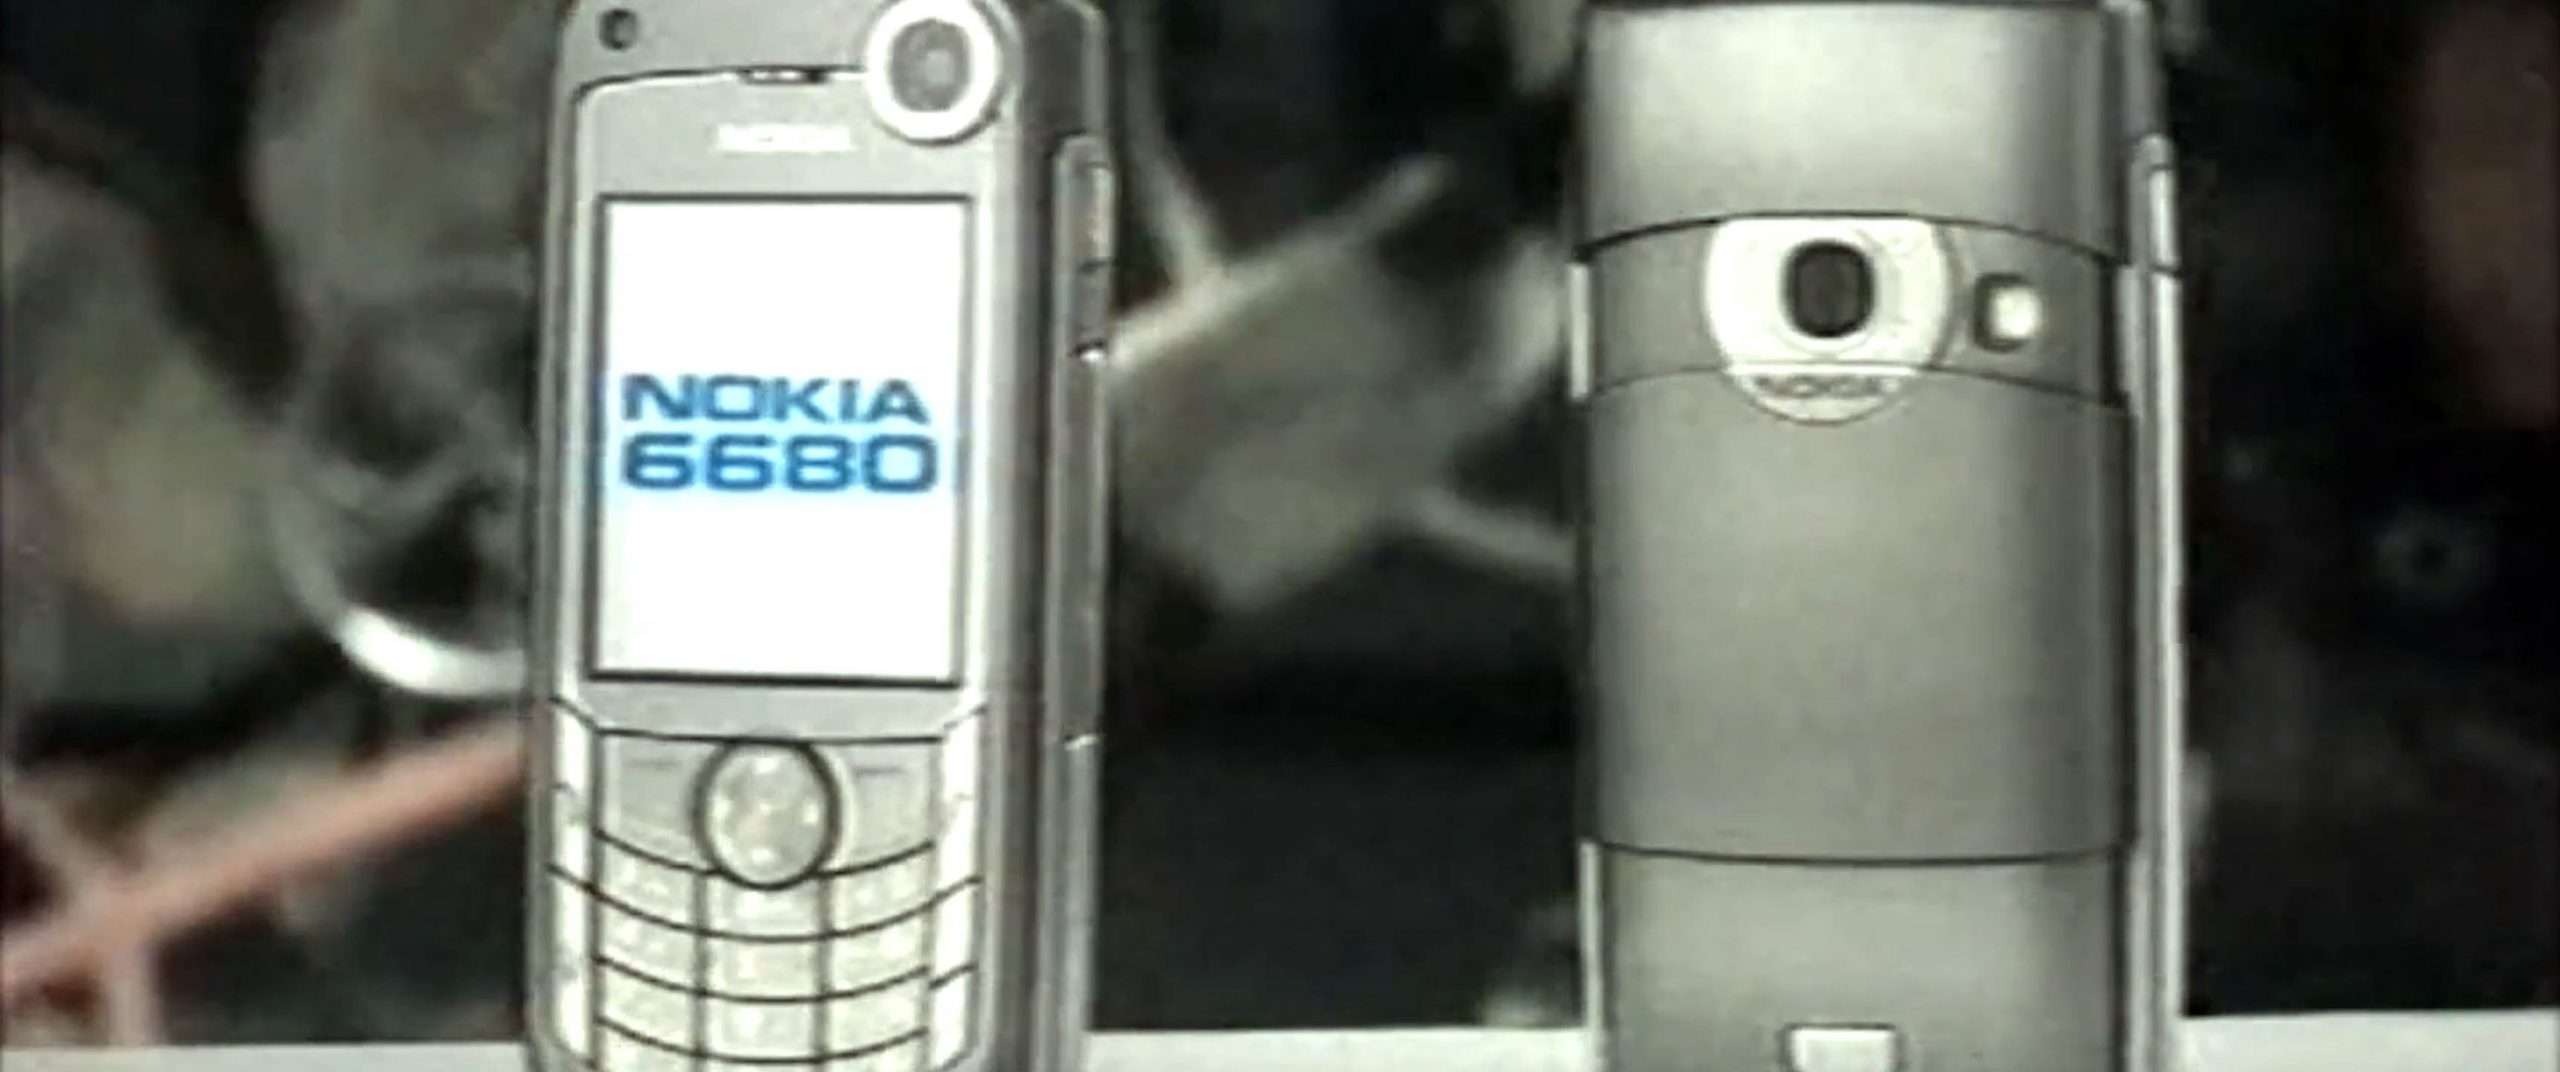 Gianno Morandi, il vecchio Nokia 6680 e l’arsenico